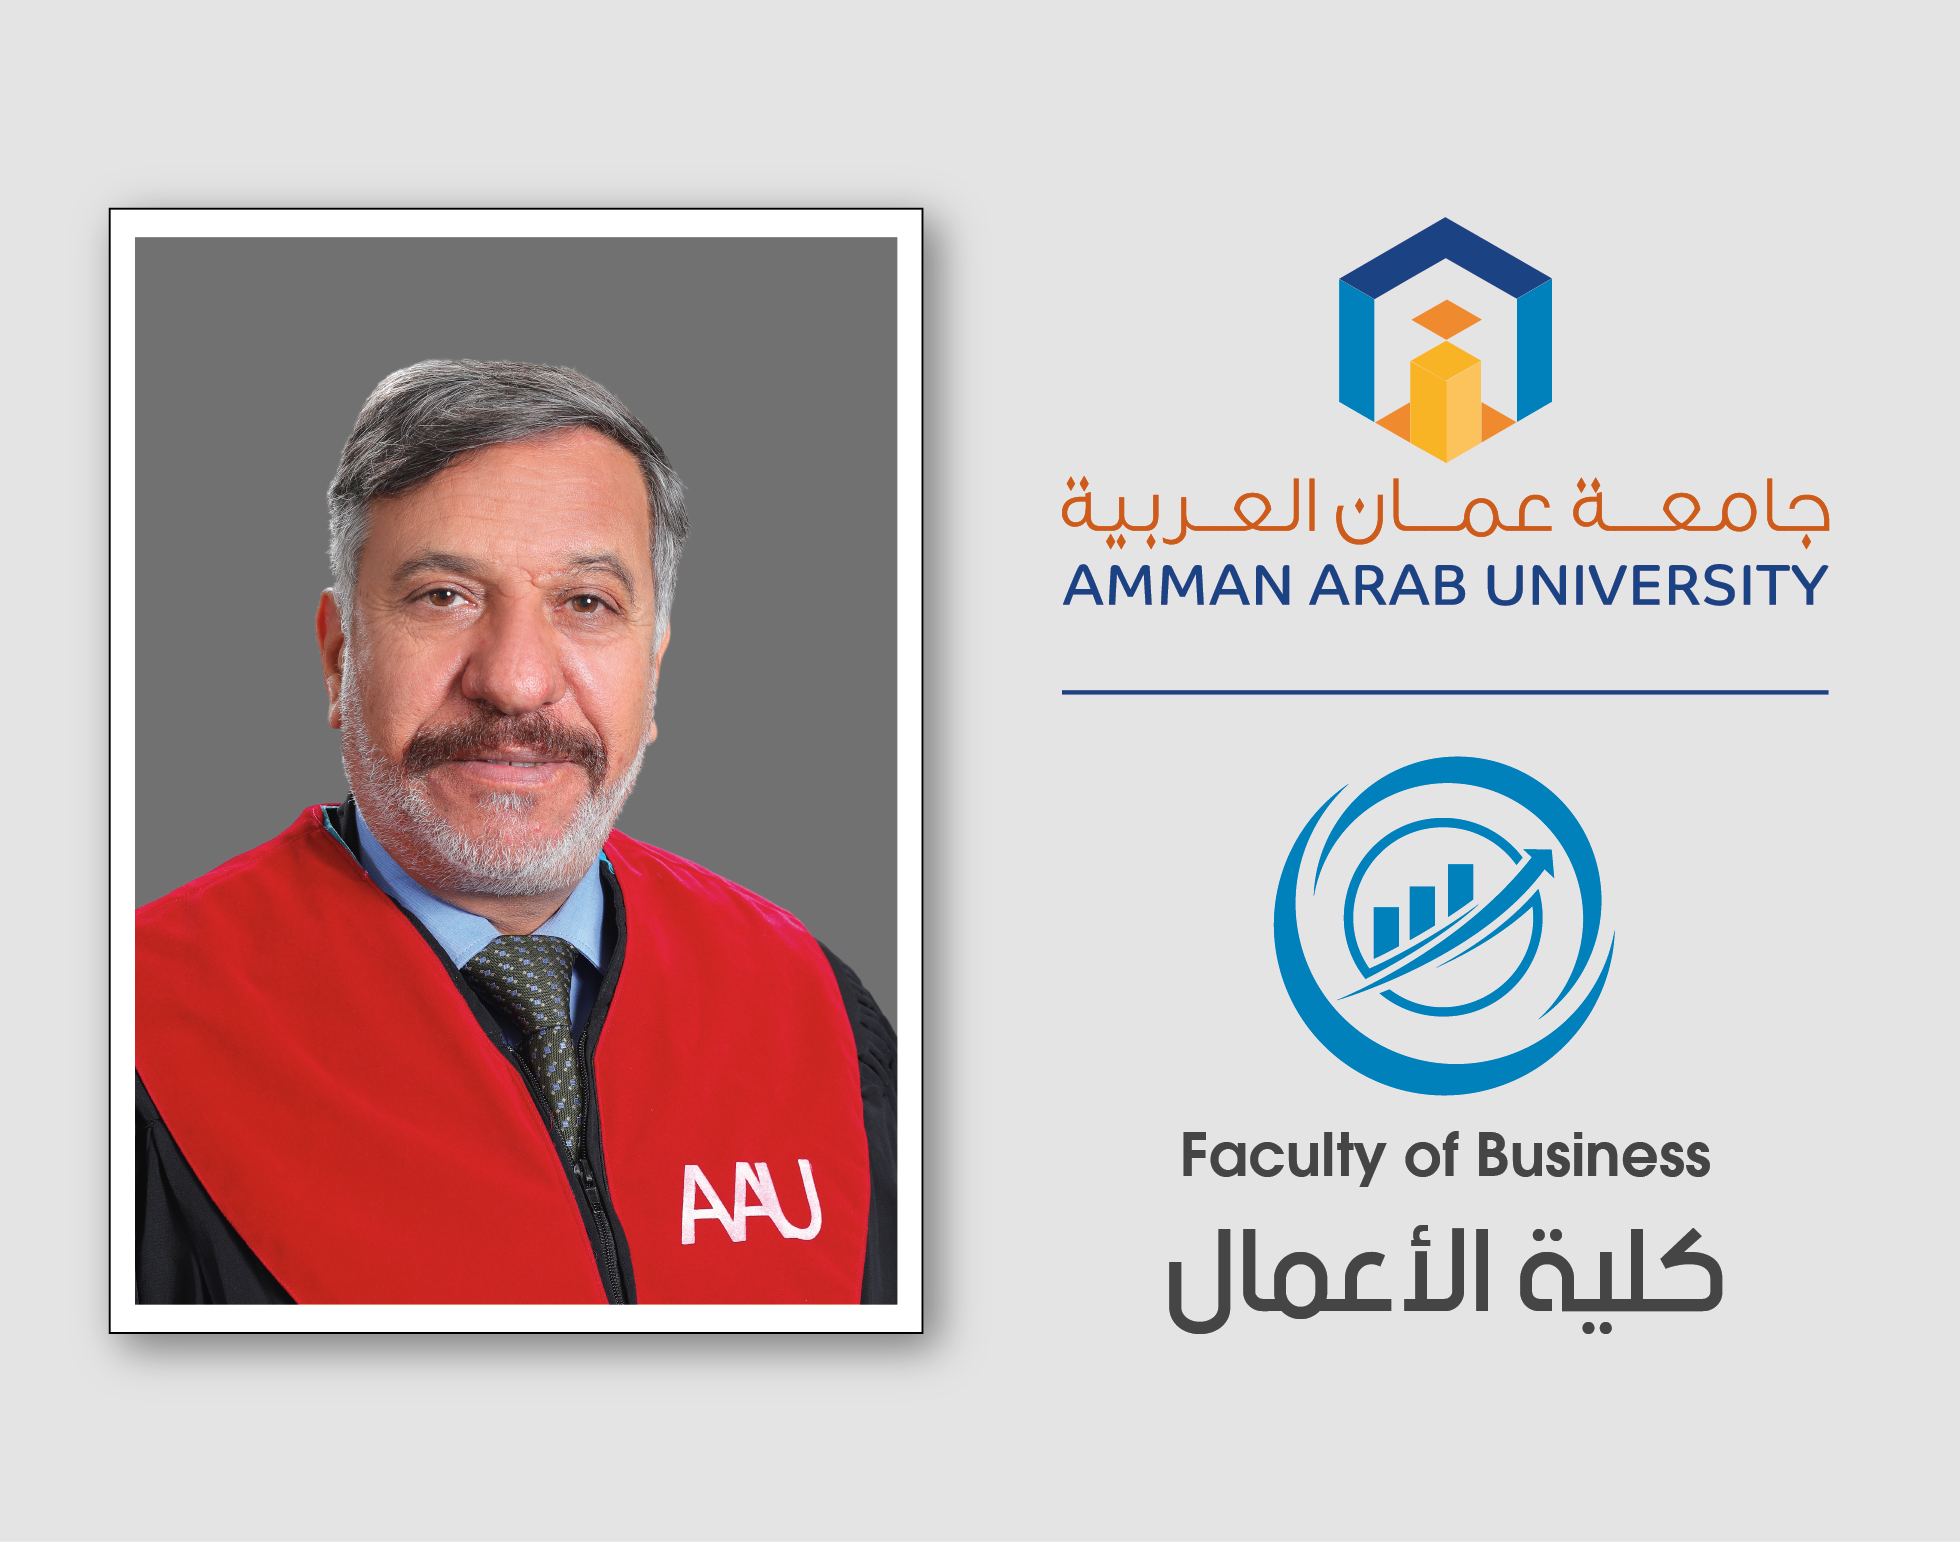 د. عفيشات من "عمان العربية" يتحدث حول القبولات في الجامعات الرسمية عبر قناة المملكة